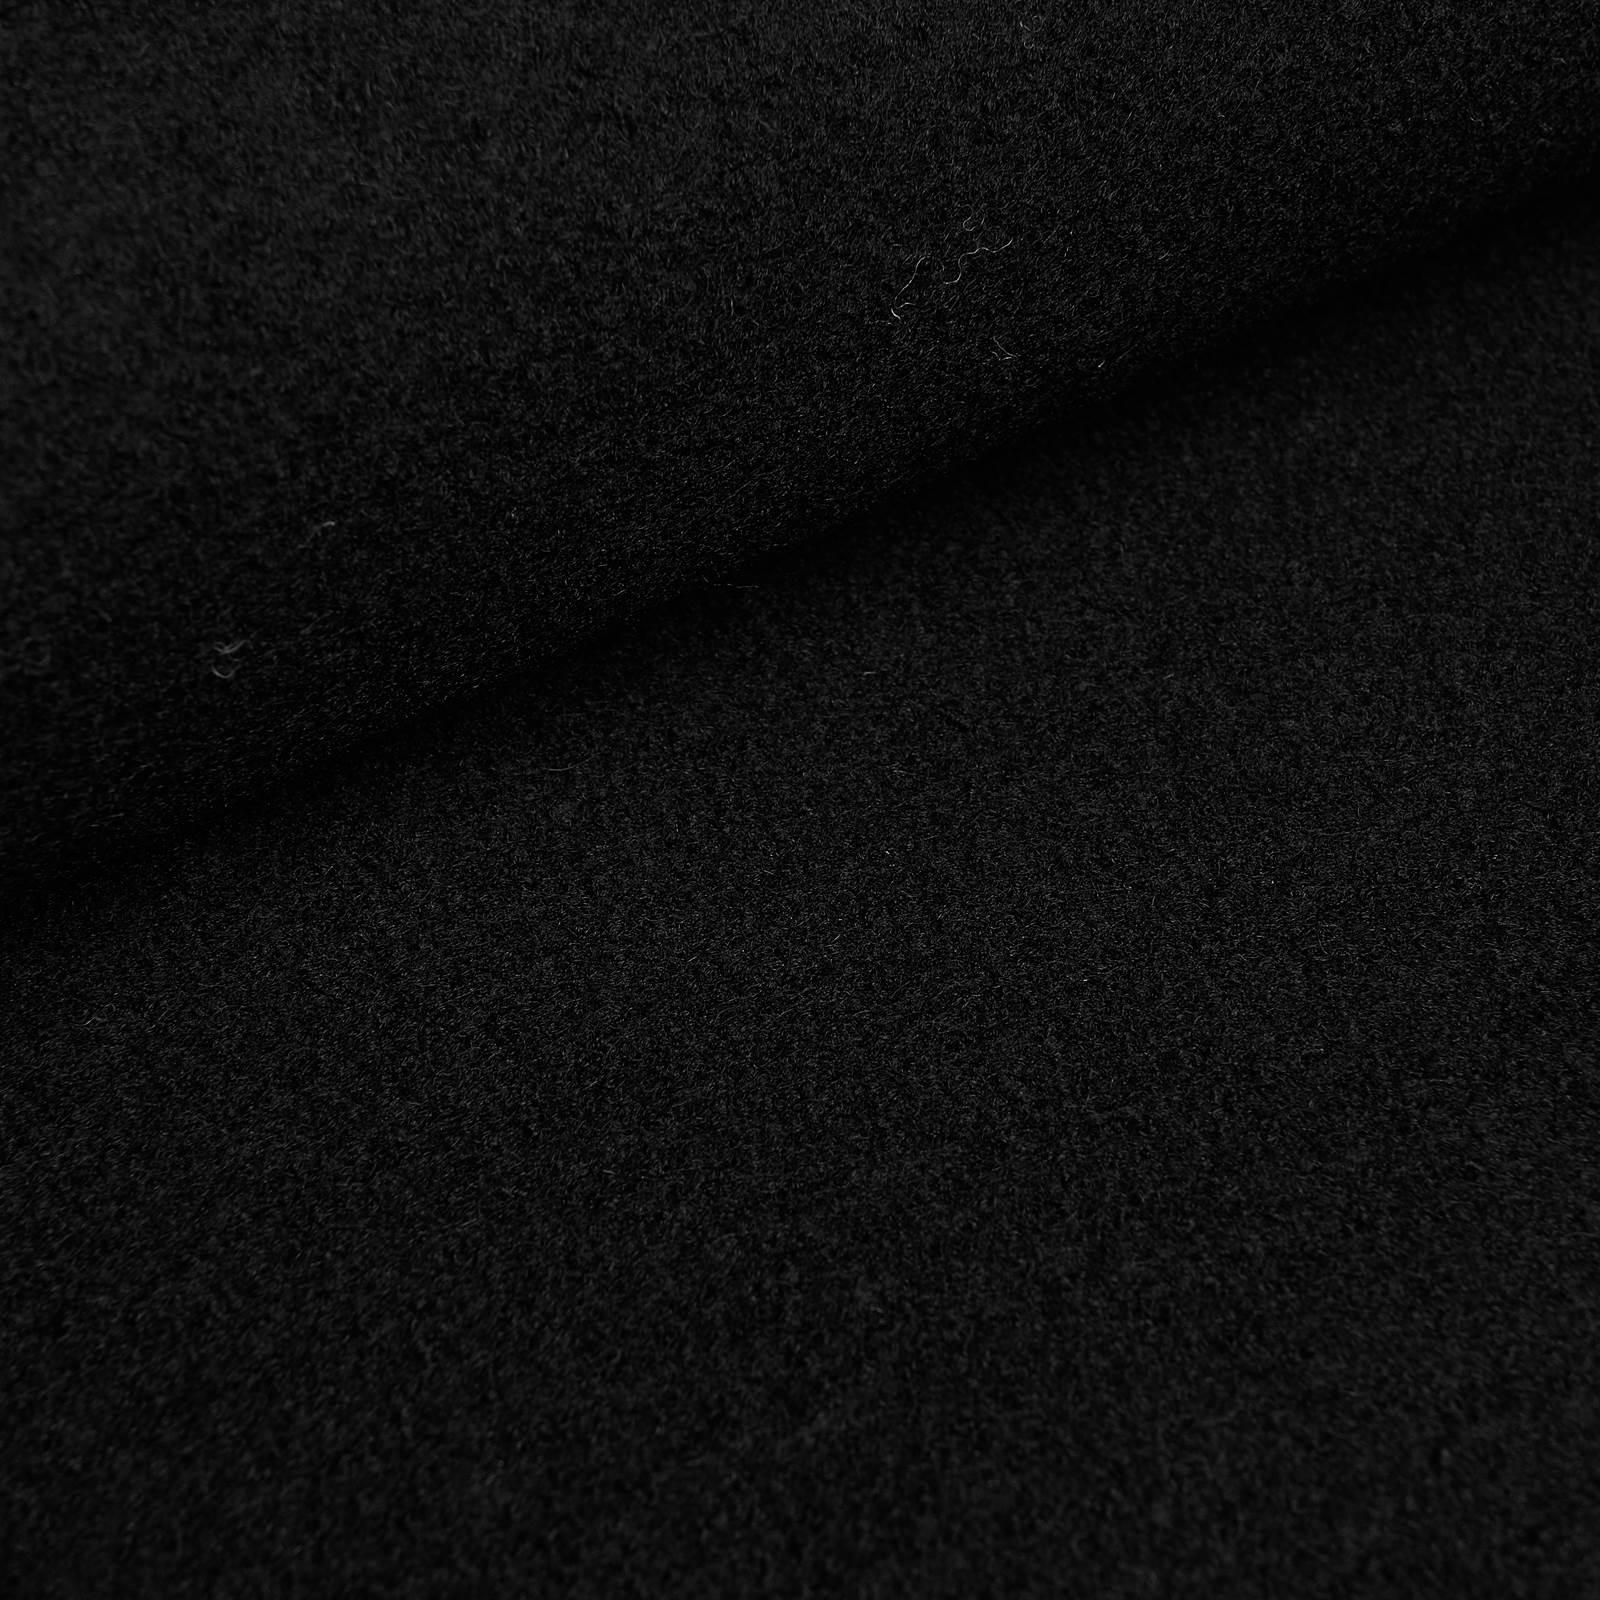 Fabian - tela de lana / loda cocida - 100% lana virgen (negro)